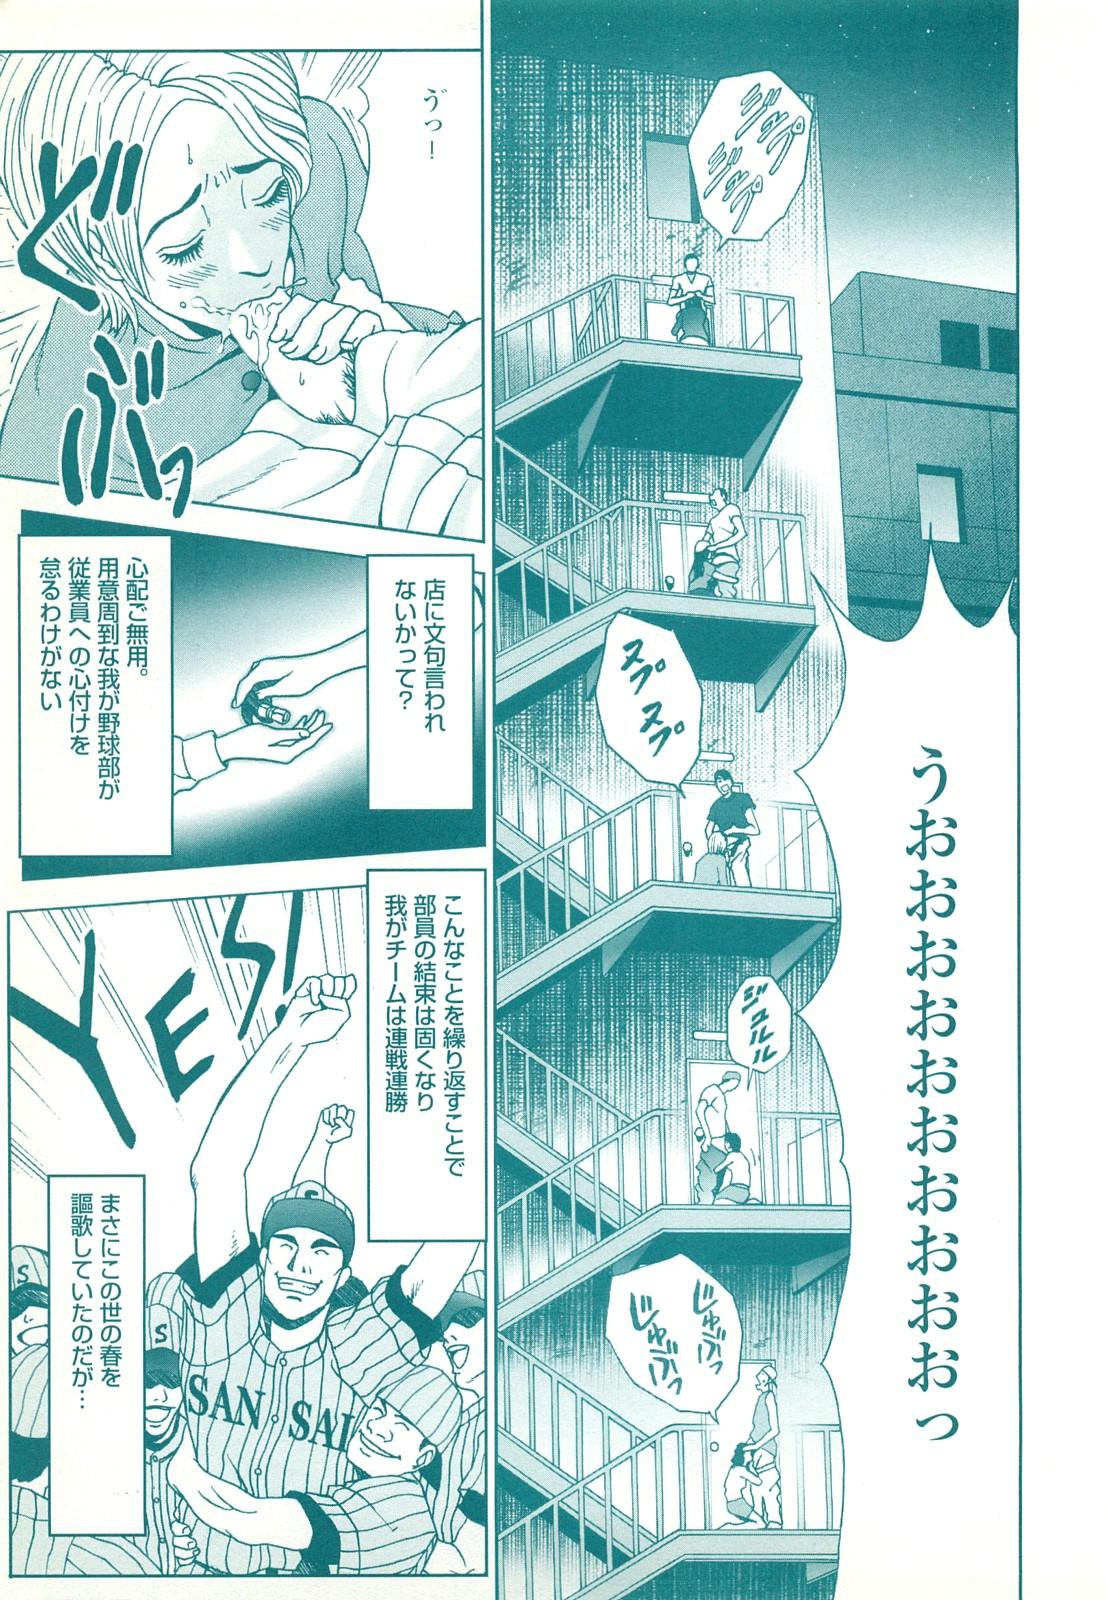 コミック裏モノJAPAN Vol.18 今井のりたつスペシャル号 152